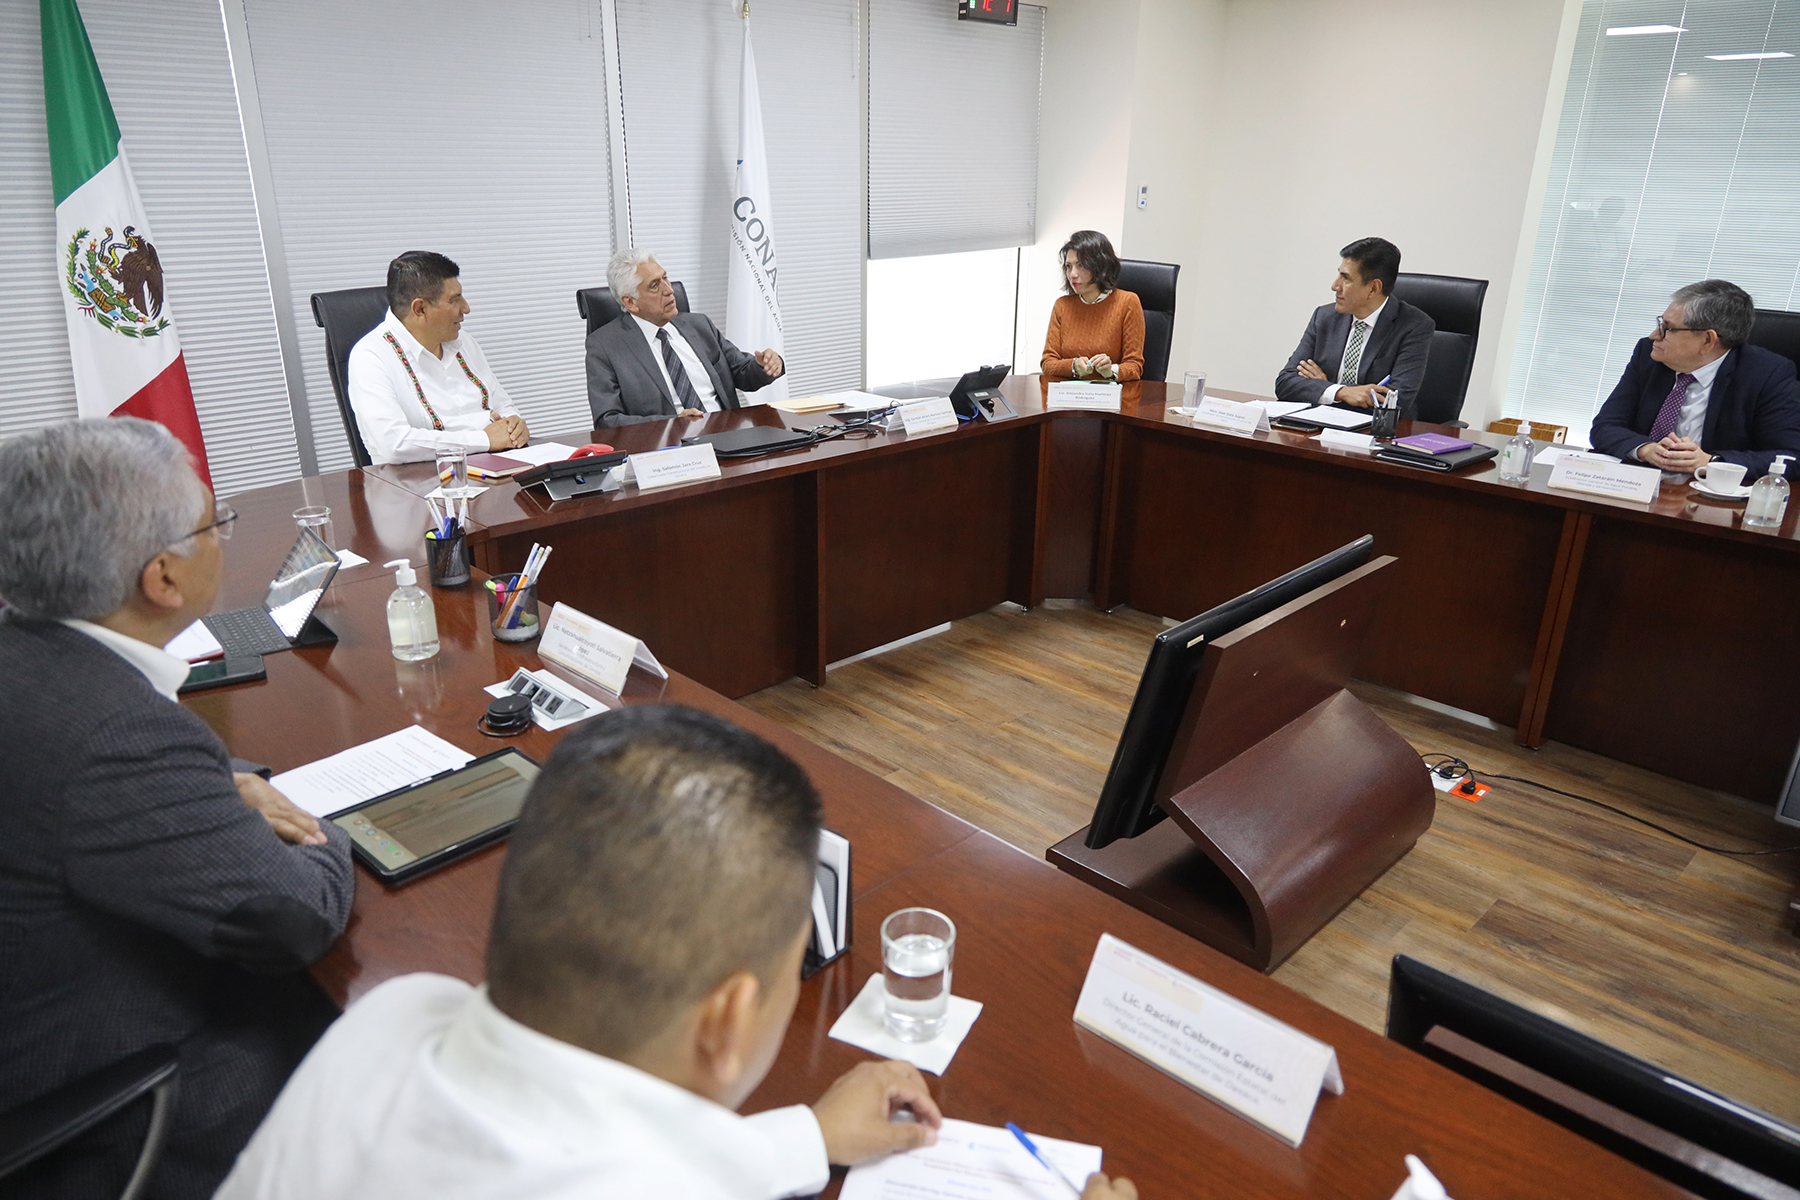 Funcionarios de Conagua y el Gobierno de Oaxaca en reunión de trabajo.